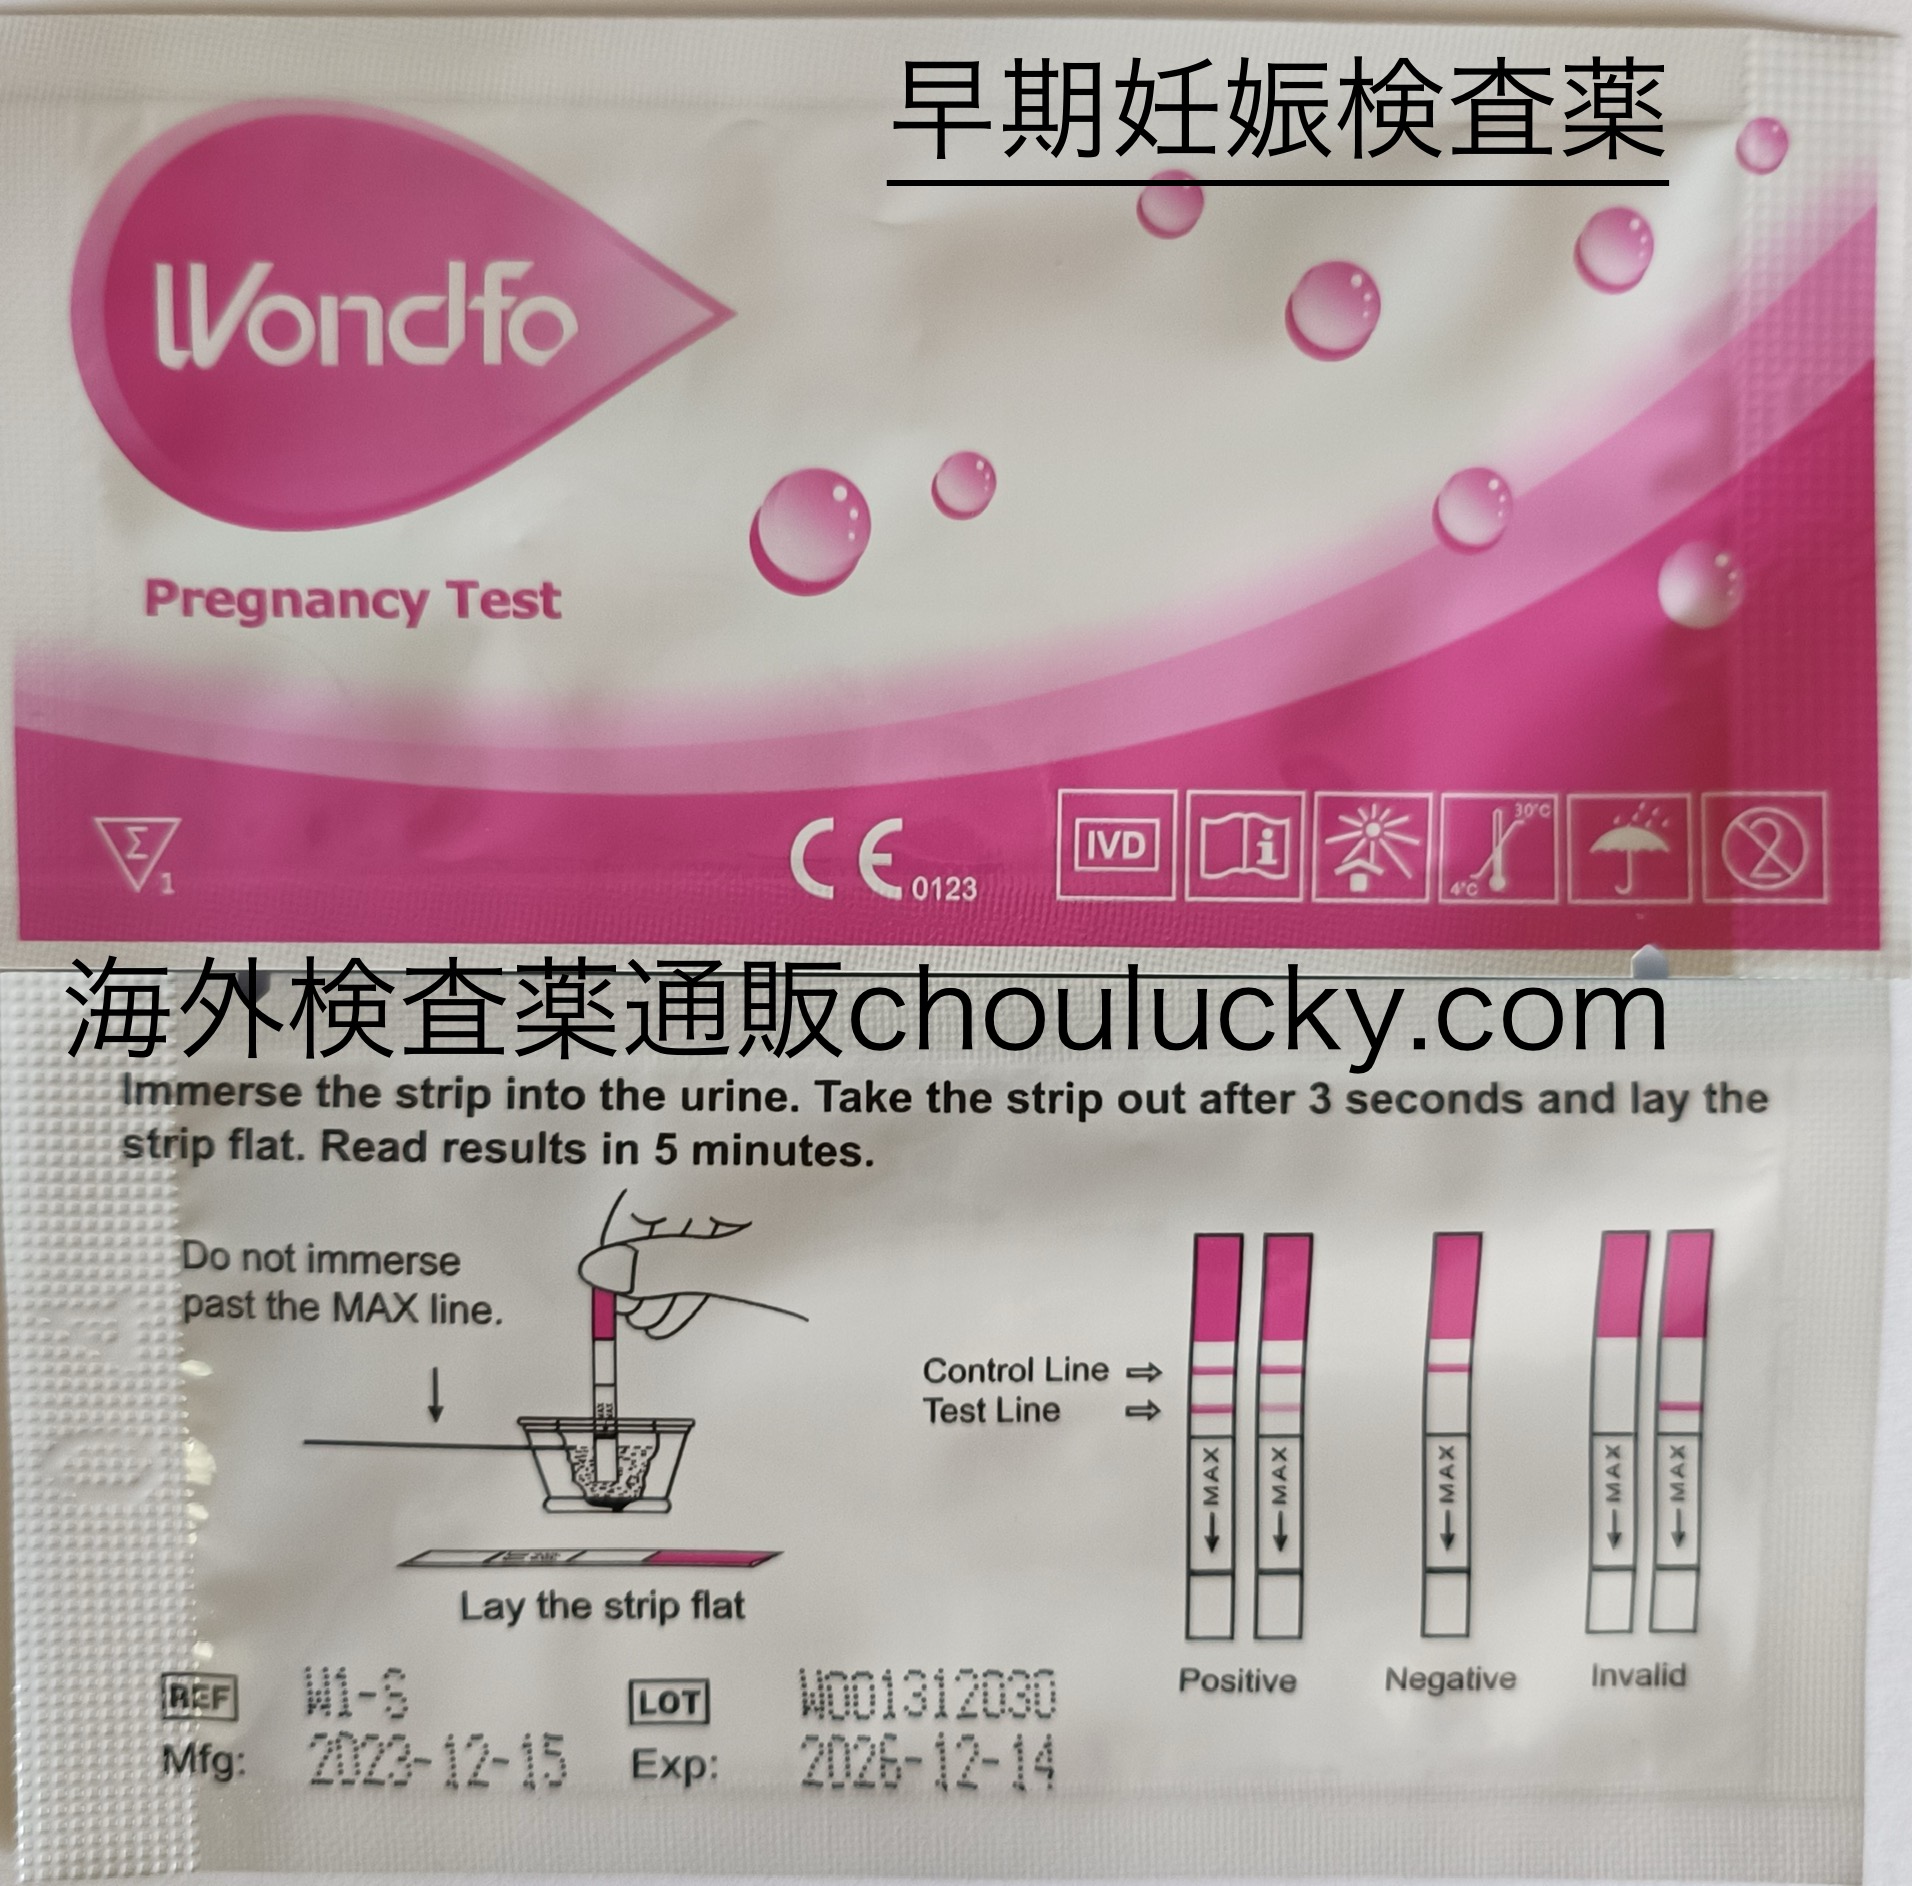 Wondfoワンステップ早期妊娠検査薬【推奨使用期限2026年12月】